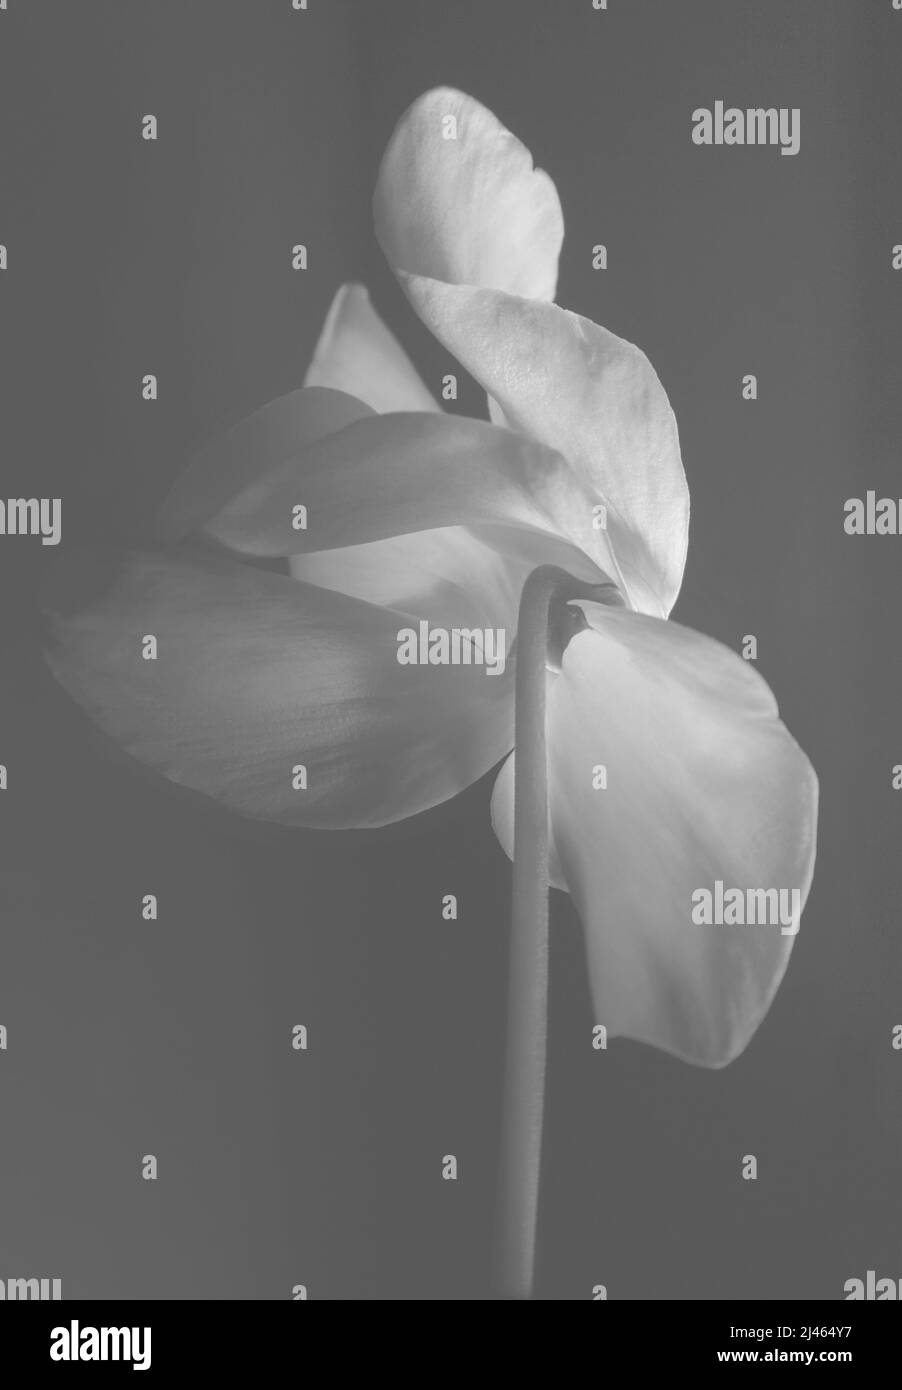 Bel fiore di ciclamino su sfondo nero. Delicato fiore rosa su un gambo lungo e sottile. Delicati petali rosa grandi. Vista posteriore; bianco e nero; bianco e nero Foto Stock